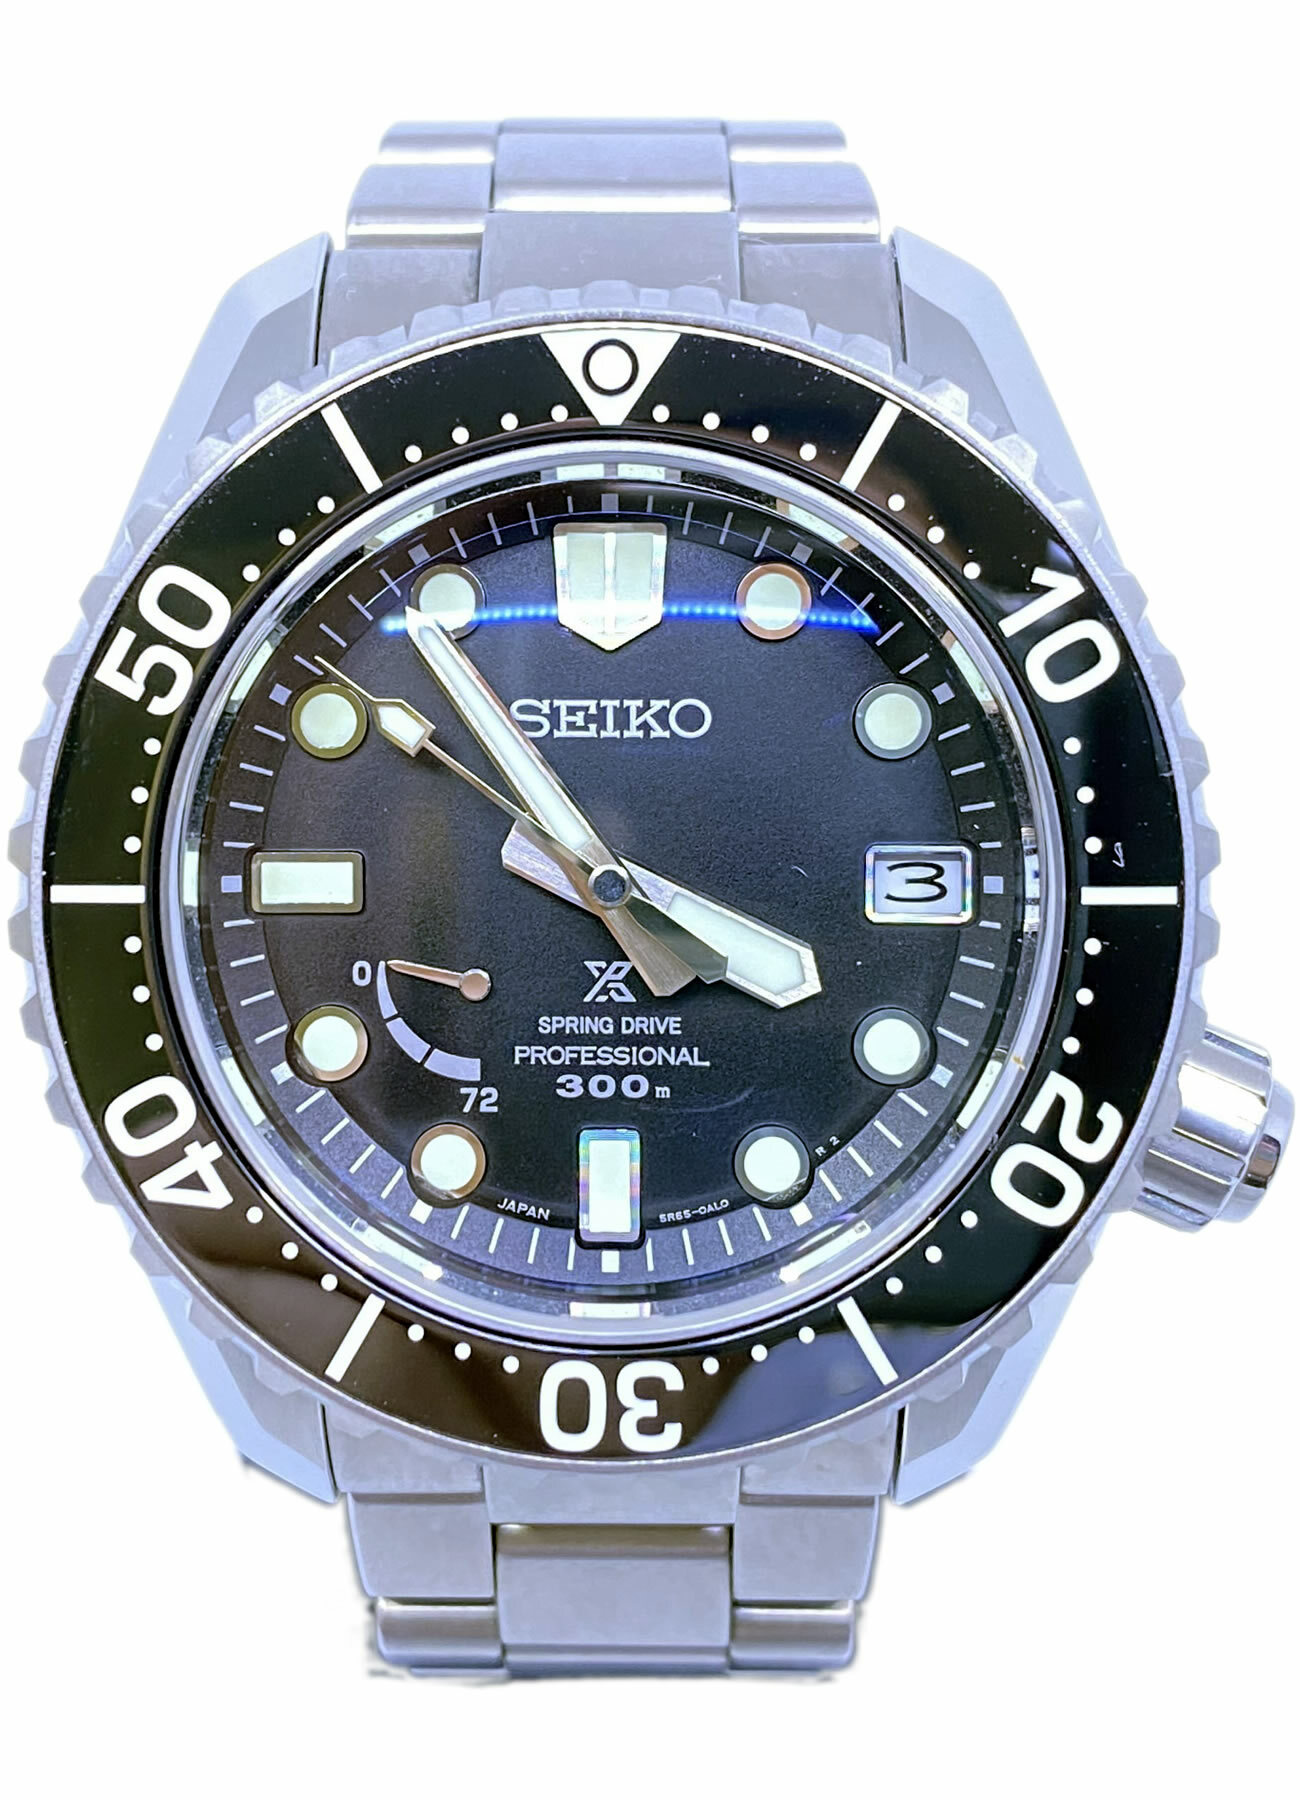 Seiko Prospex LX SNR029 Spring Drive GMT Titanium - Exquisite Timepieces